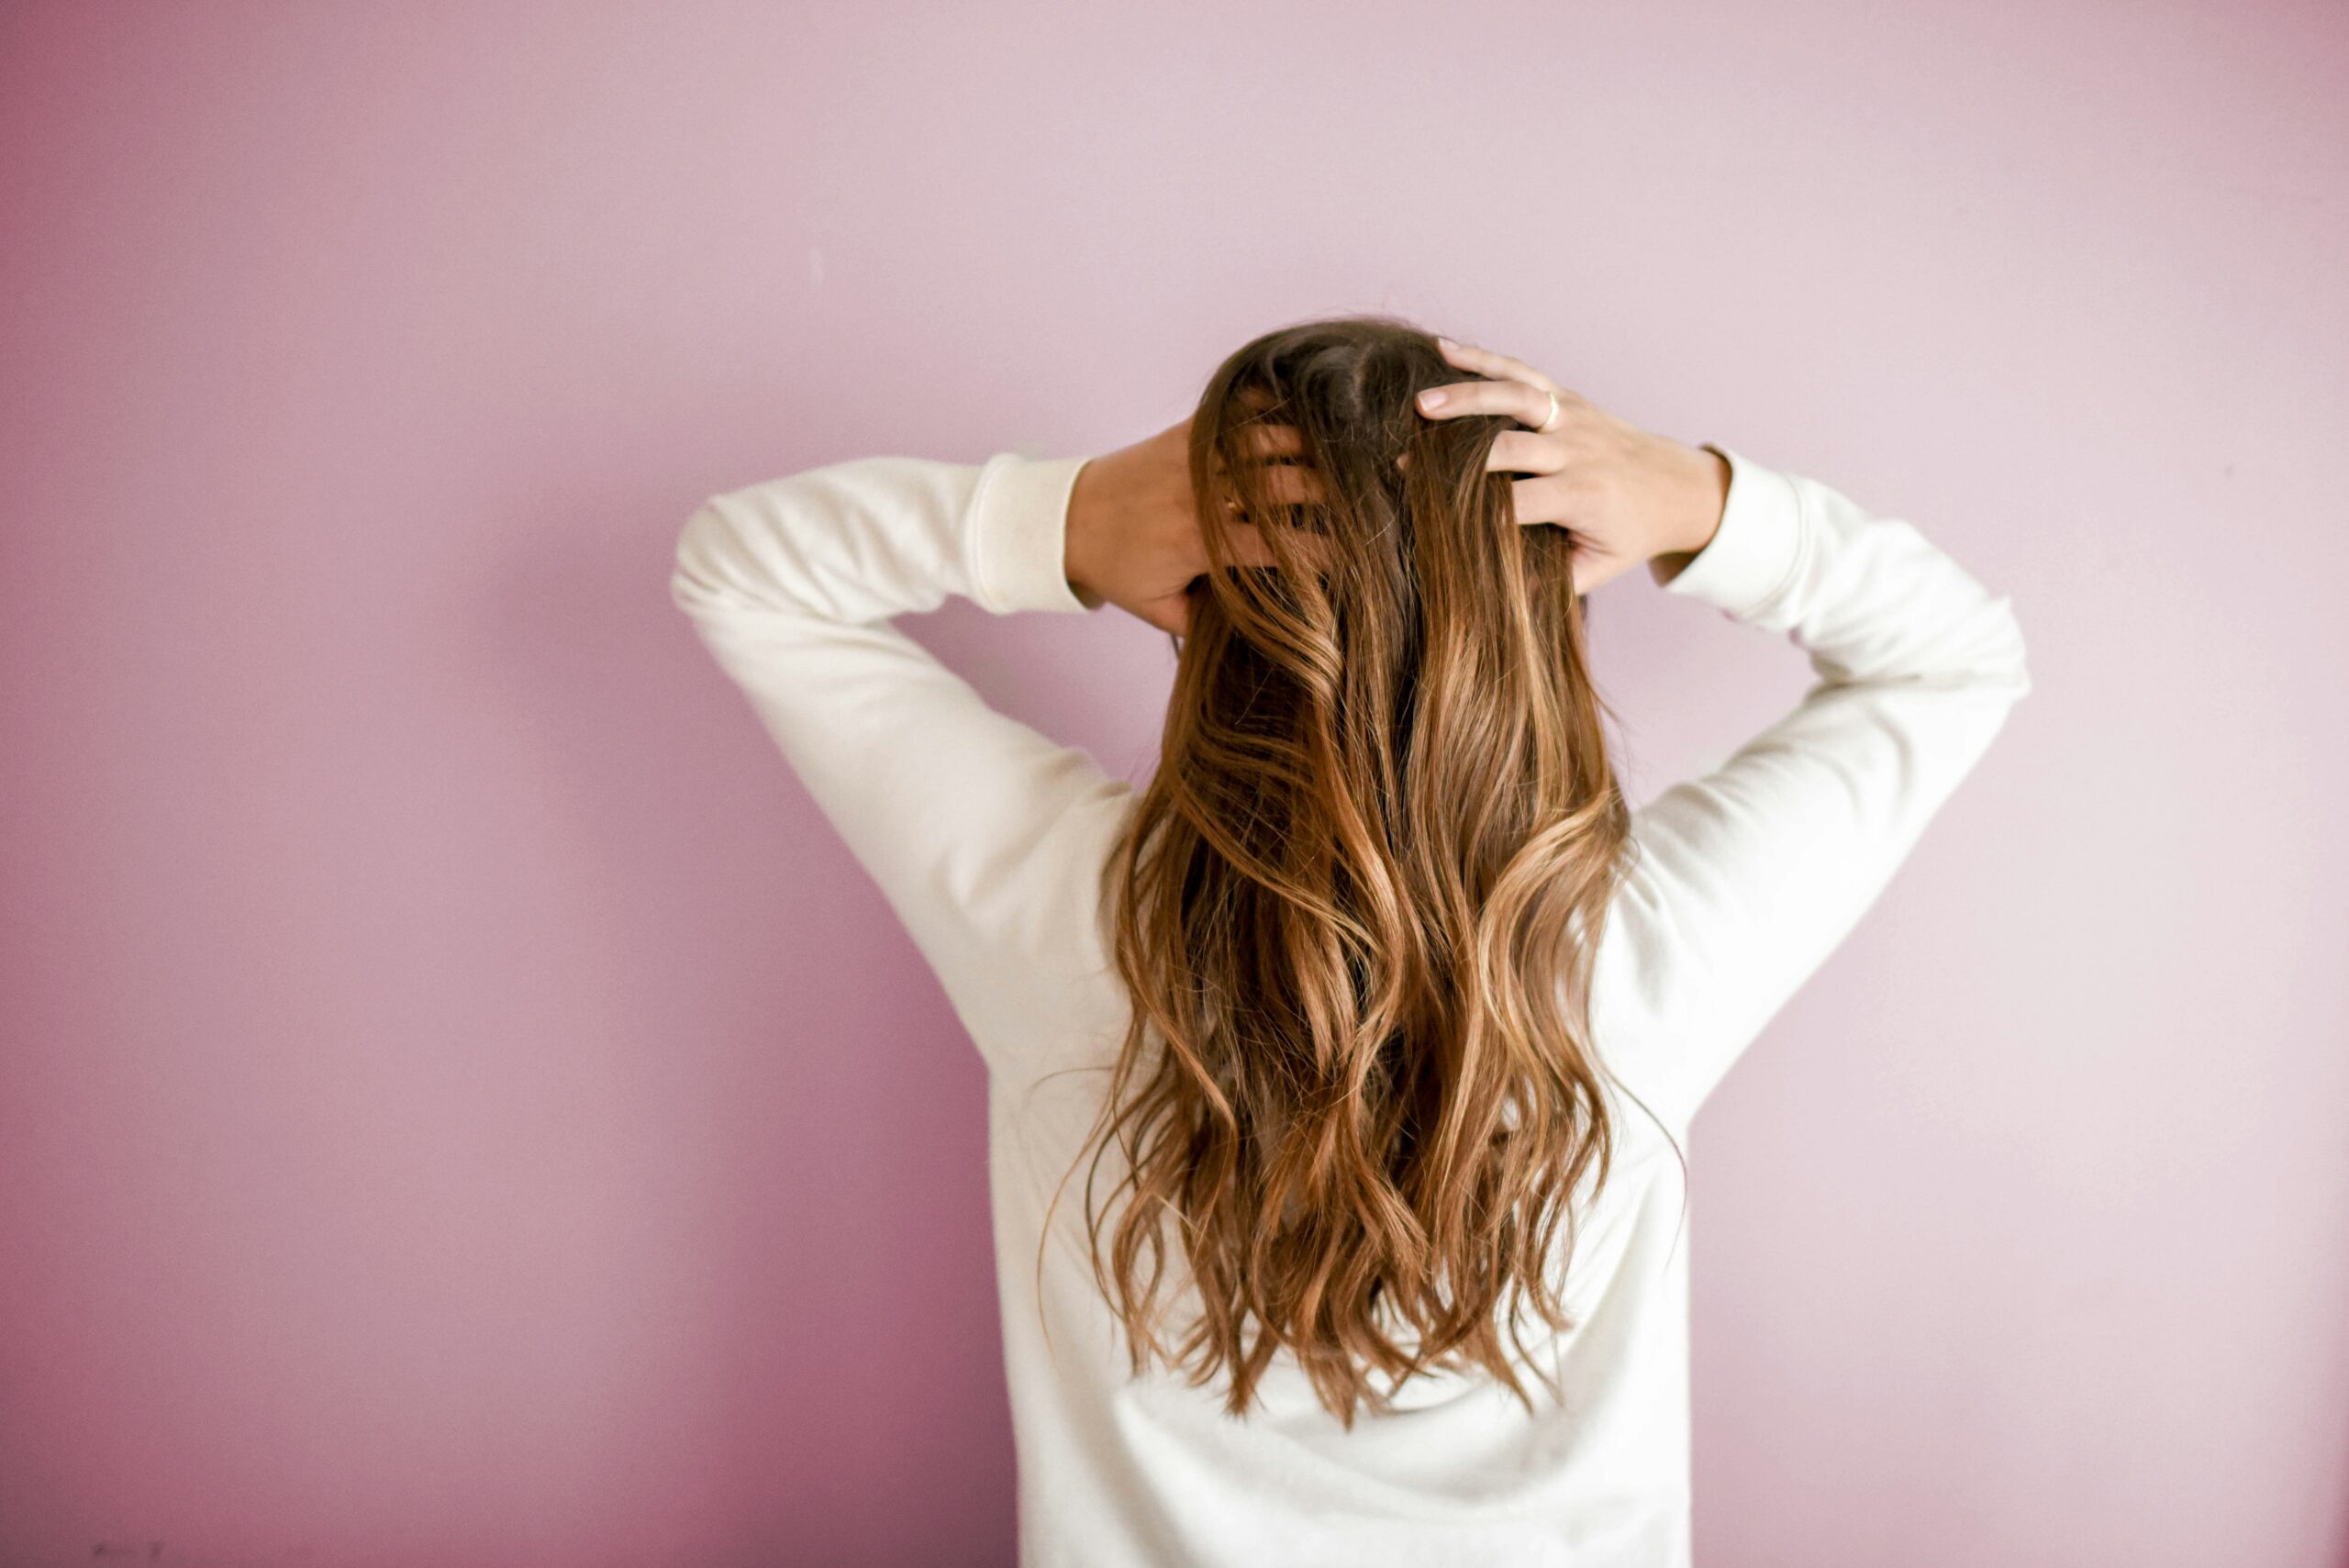 Le donne dai capelli più lunghi e di qualità fanno sesso più spesso